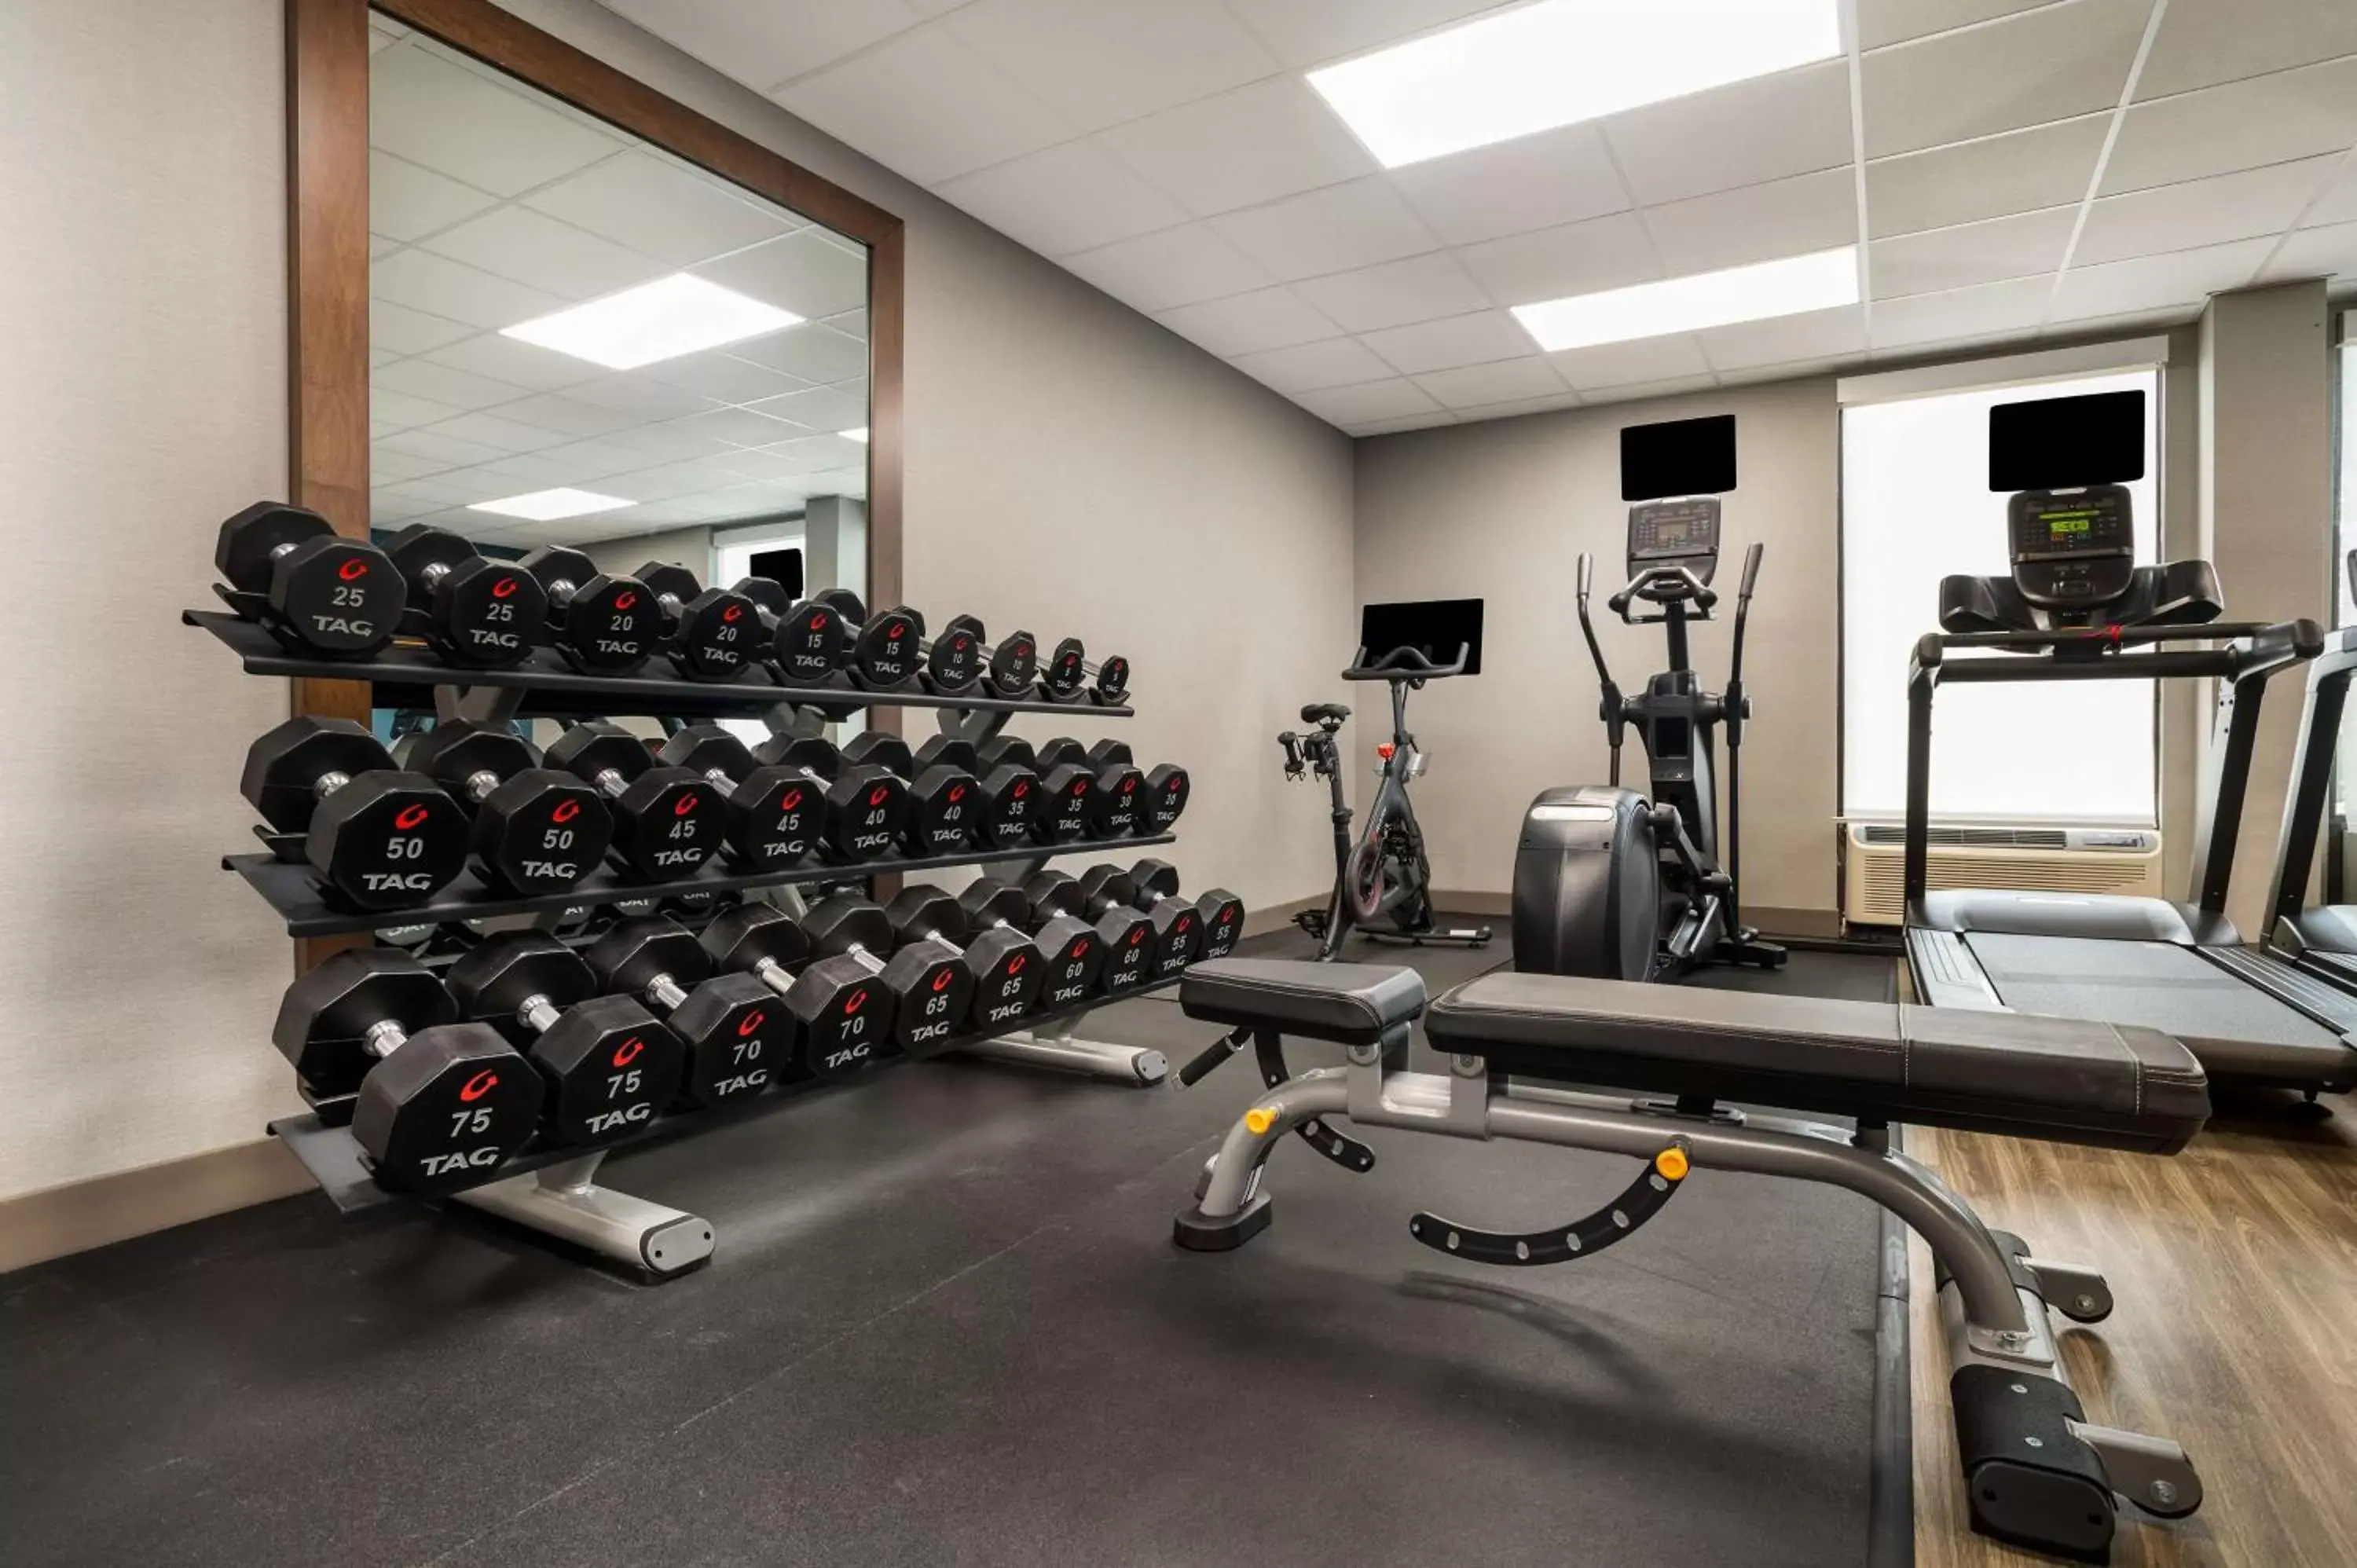 Fitness centre/facilities, Fitness Center/Facilities in Hampton Inn Gadsden